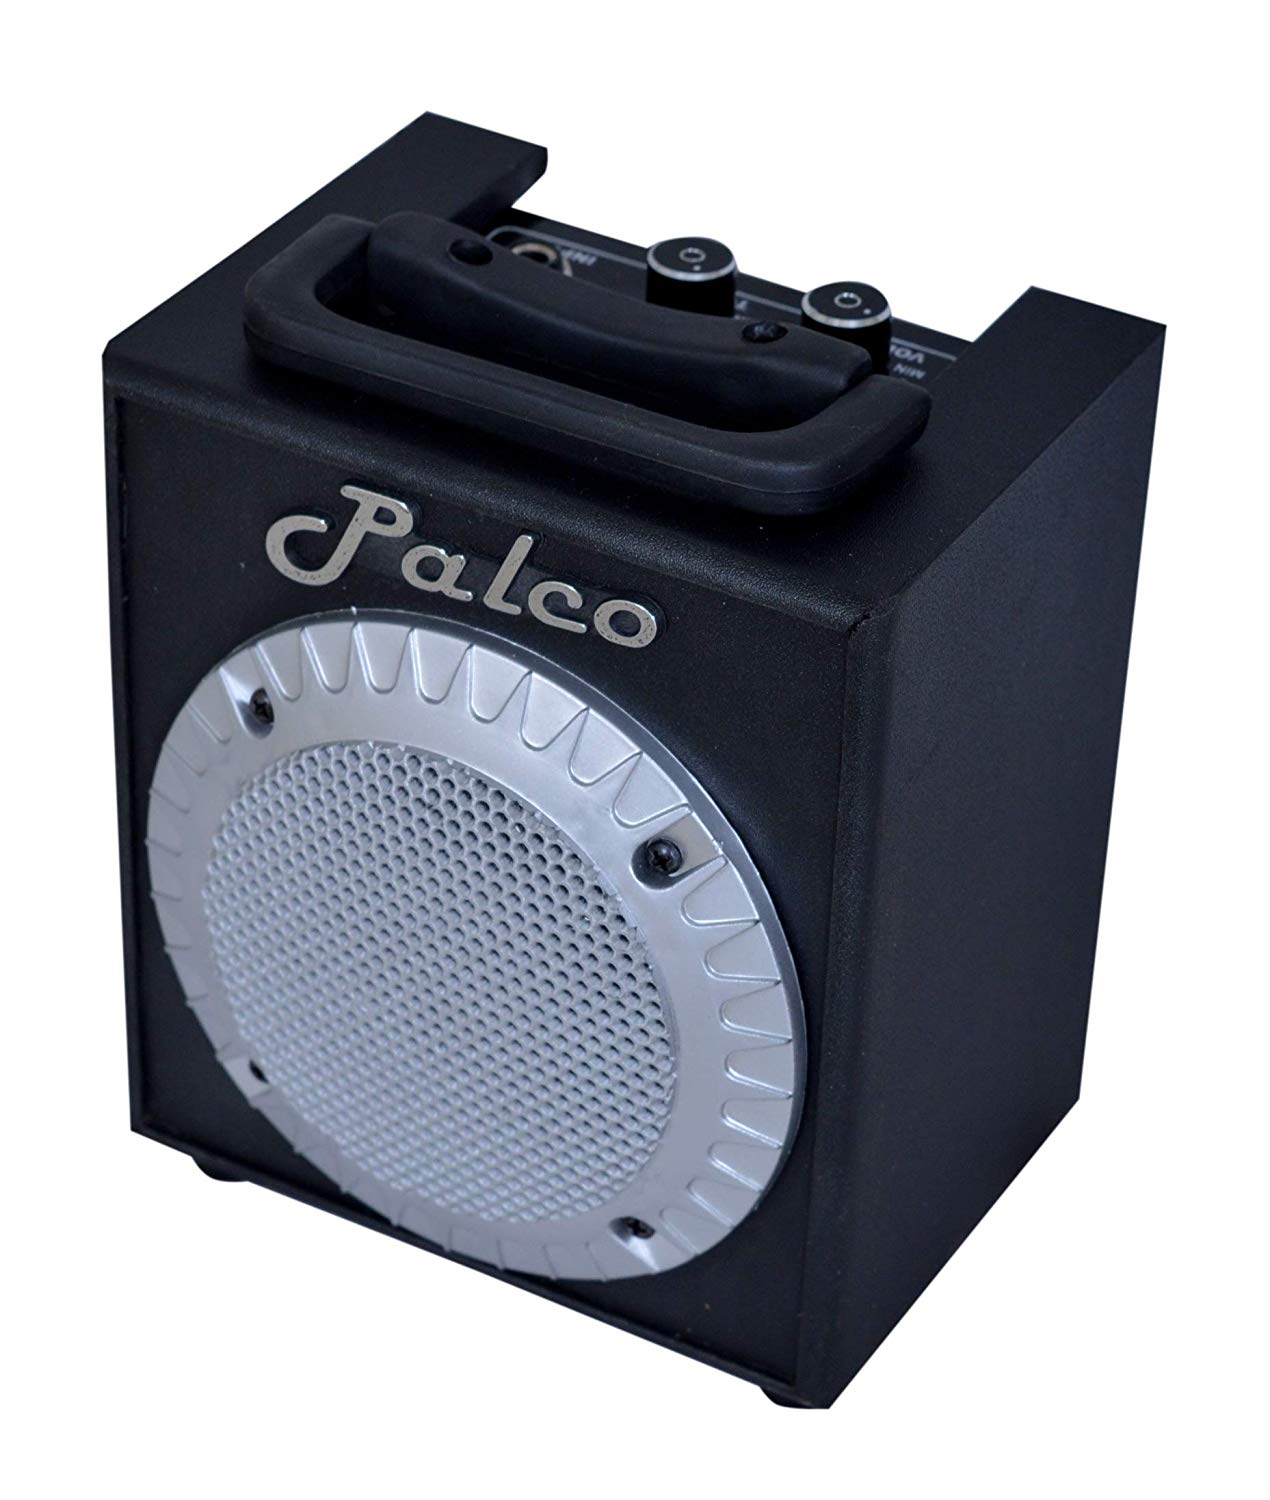 Palco portable bass amplifier